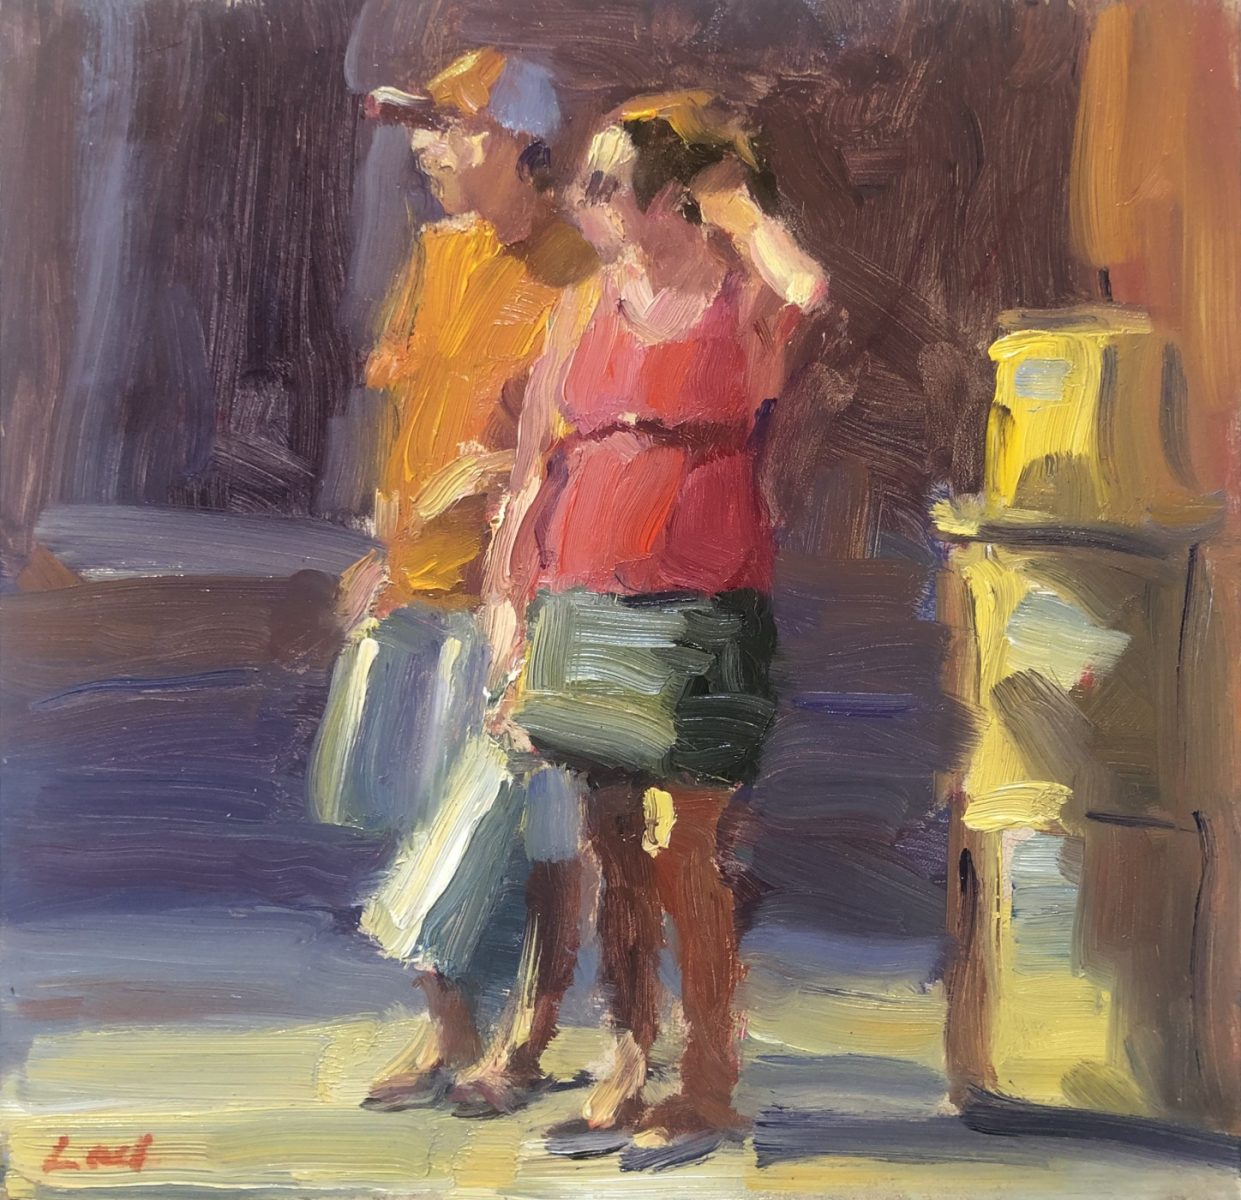 Oil painting of people walking by Lael Weyenberg